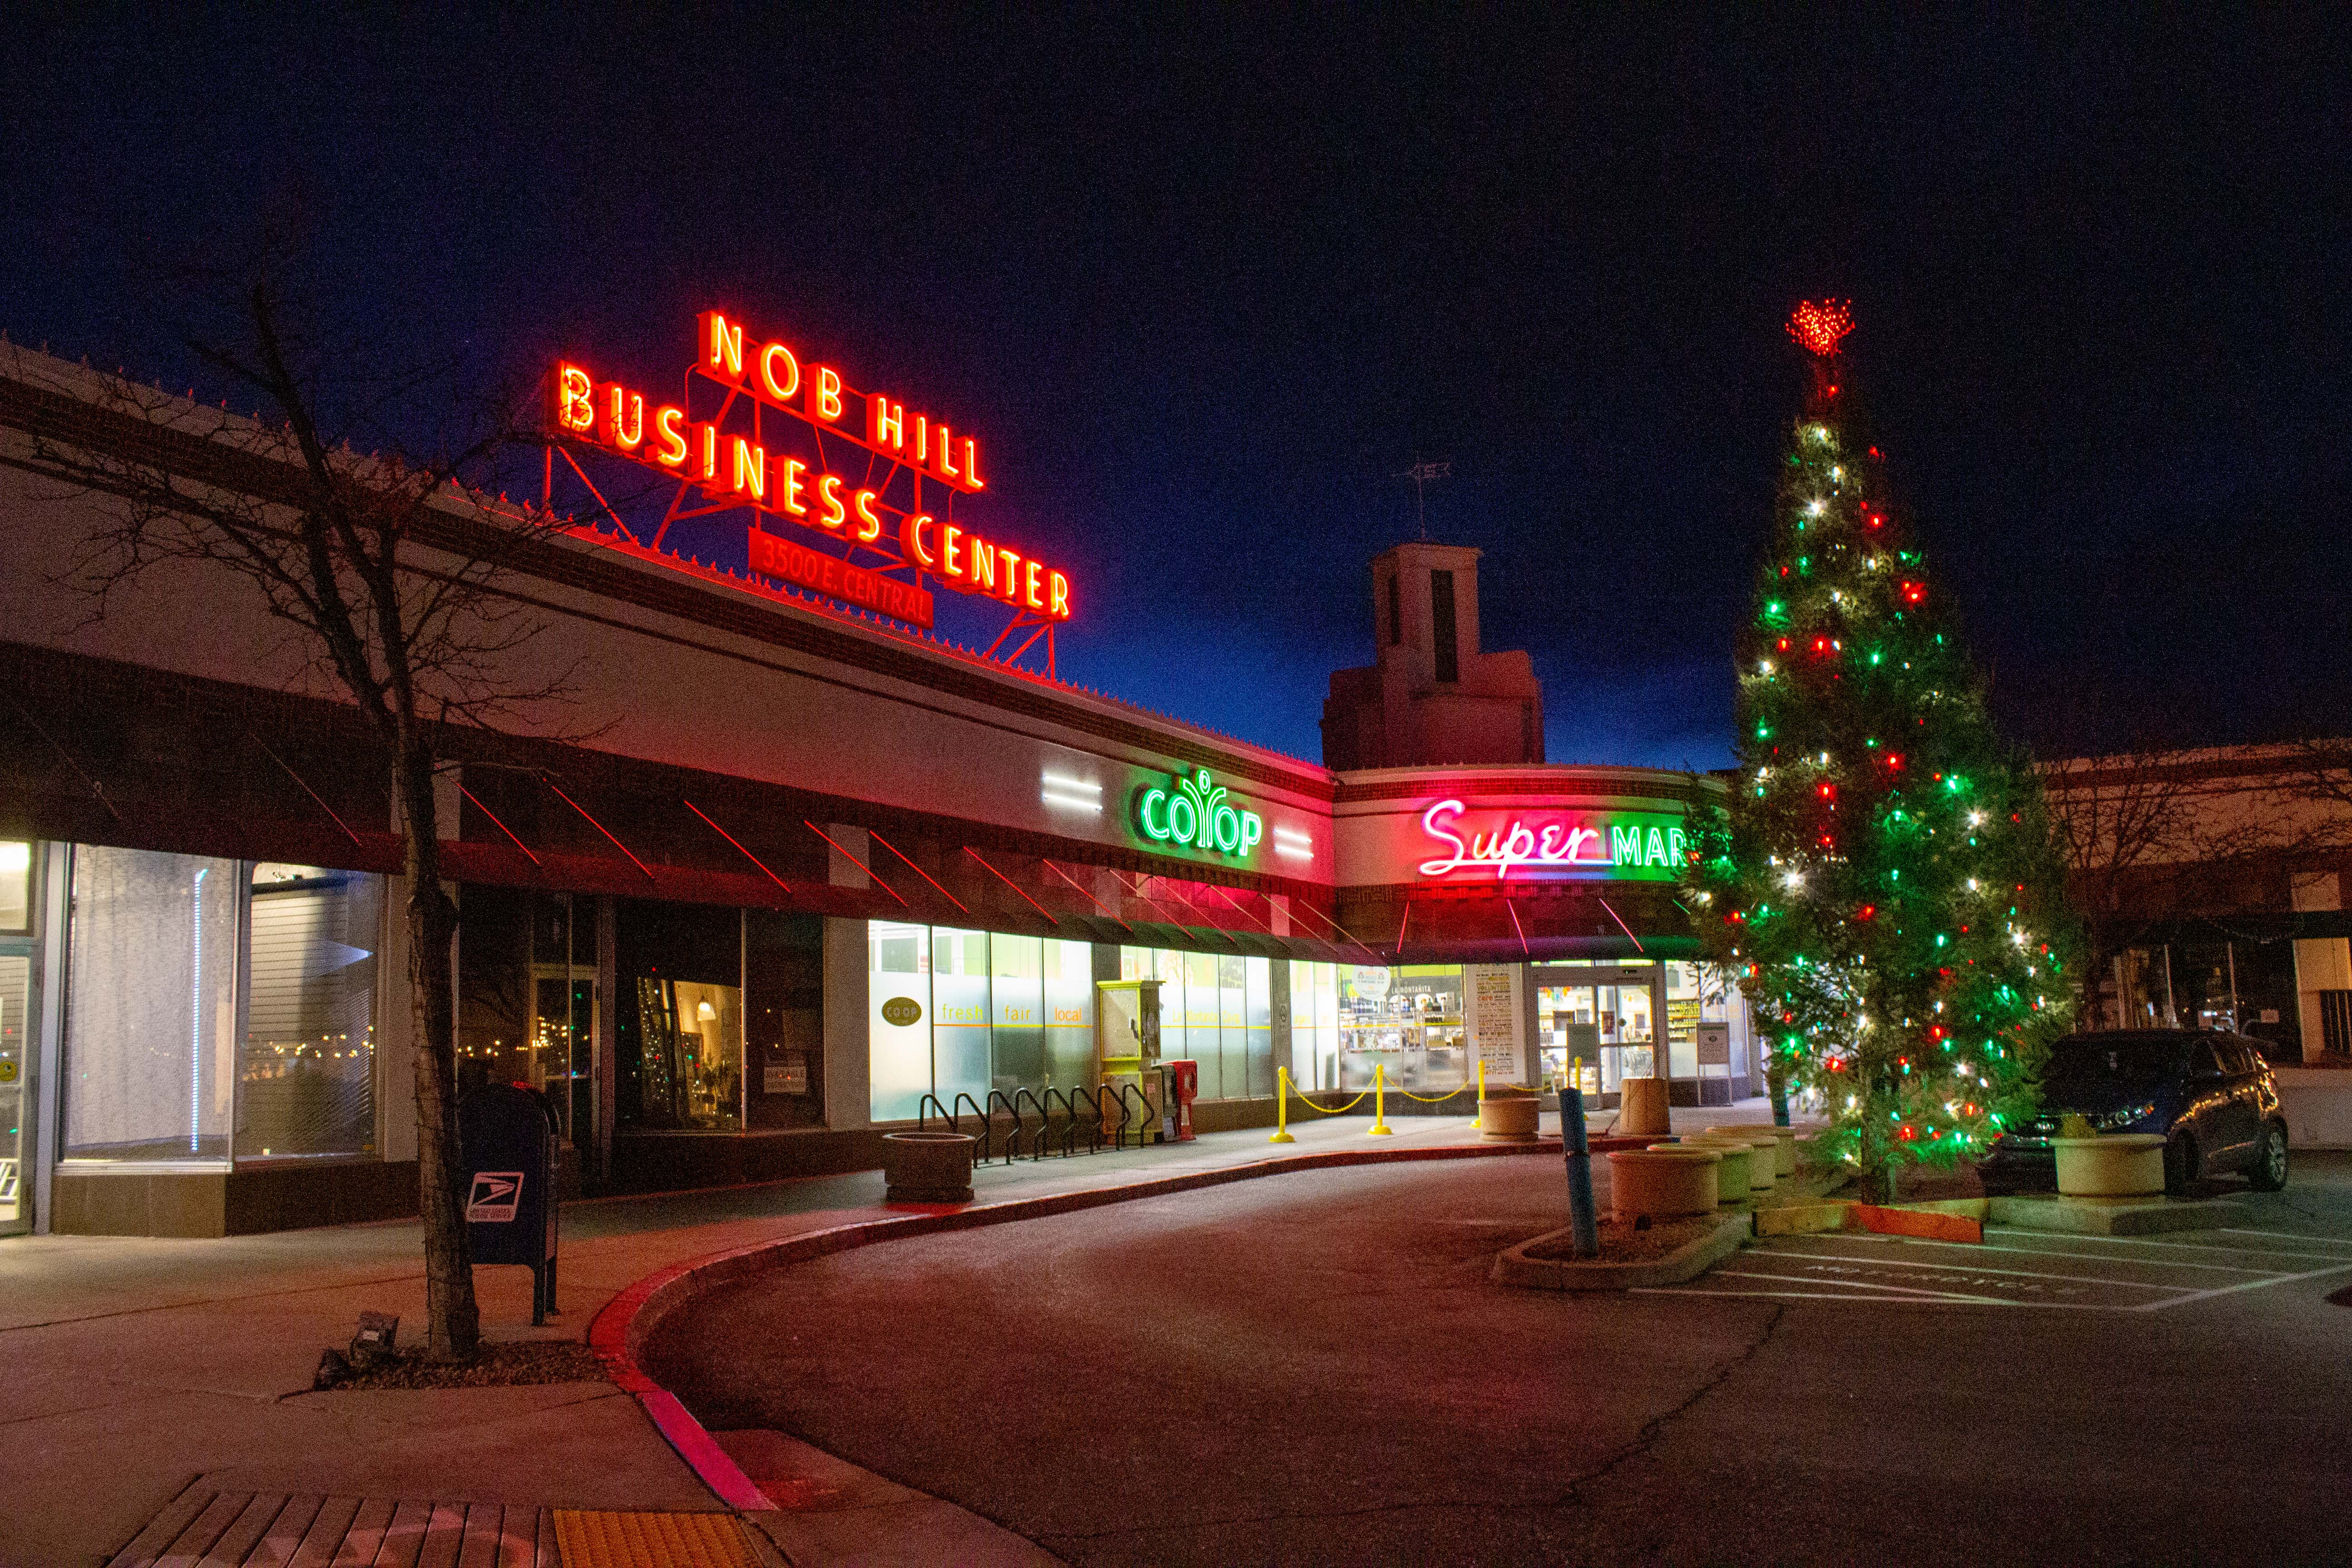 Nob Hill Business Center